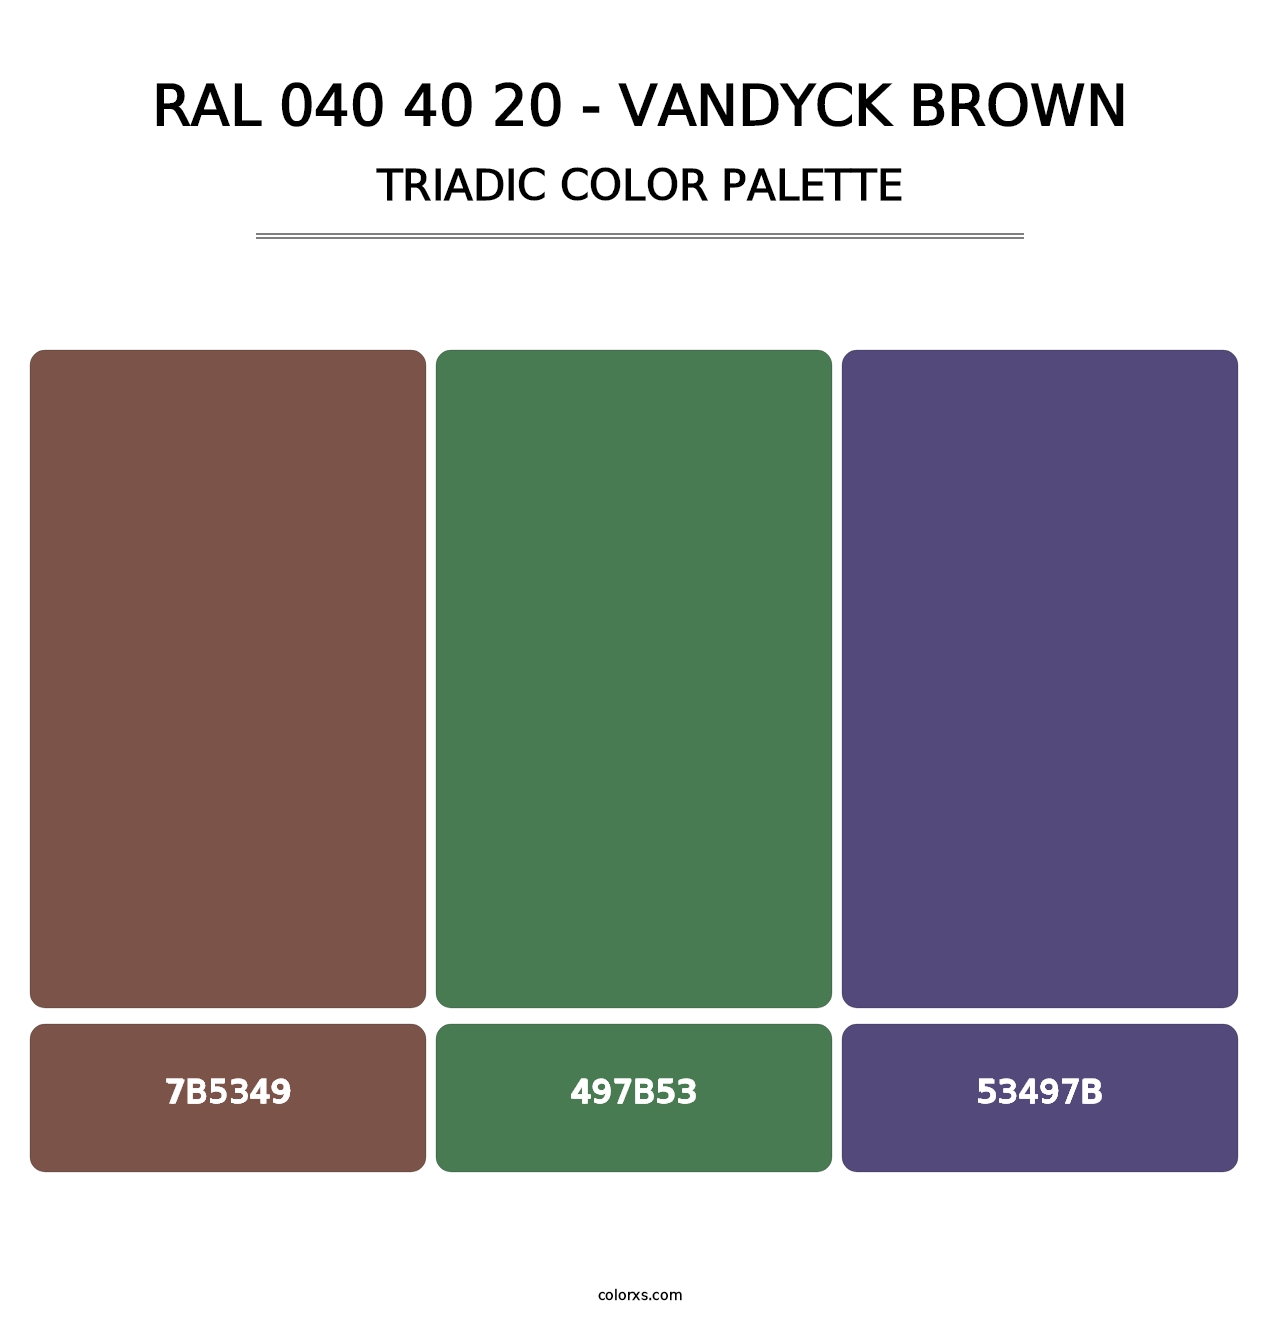 RAL 040 40 20 - Vandyck Brown - Triadic Color Palette